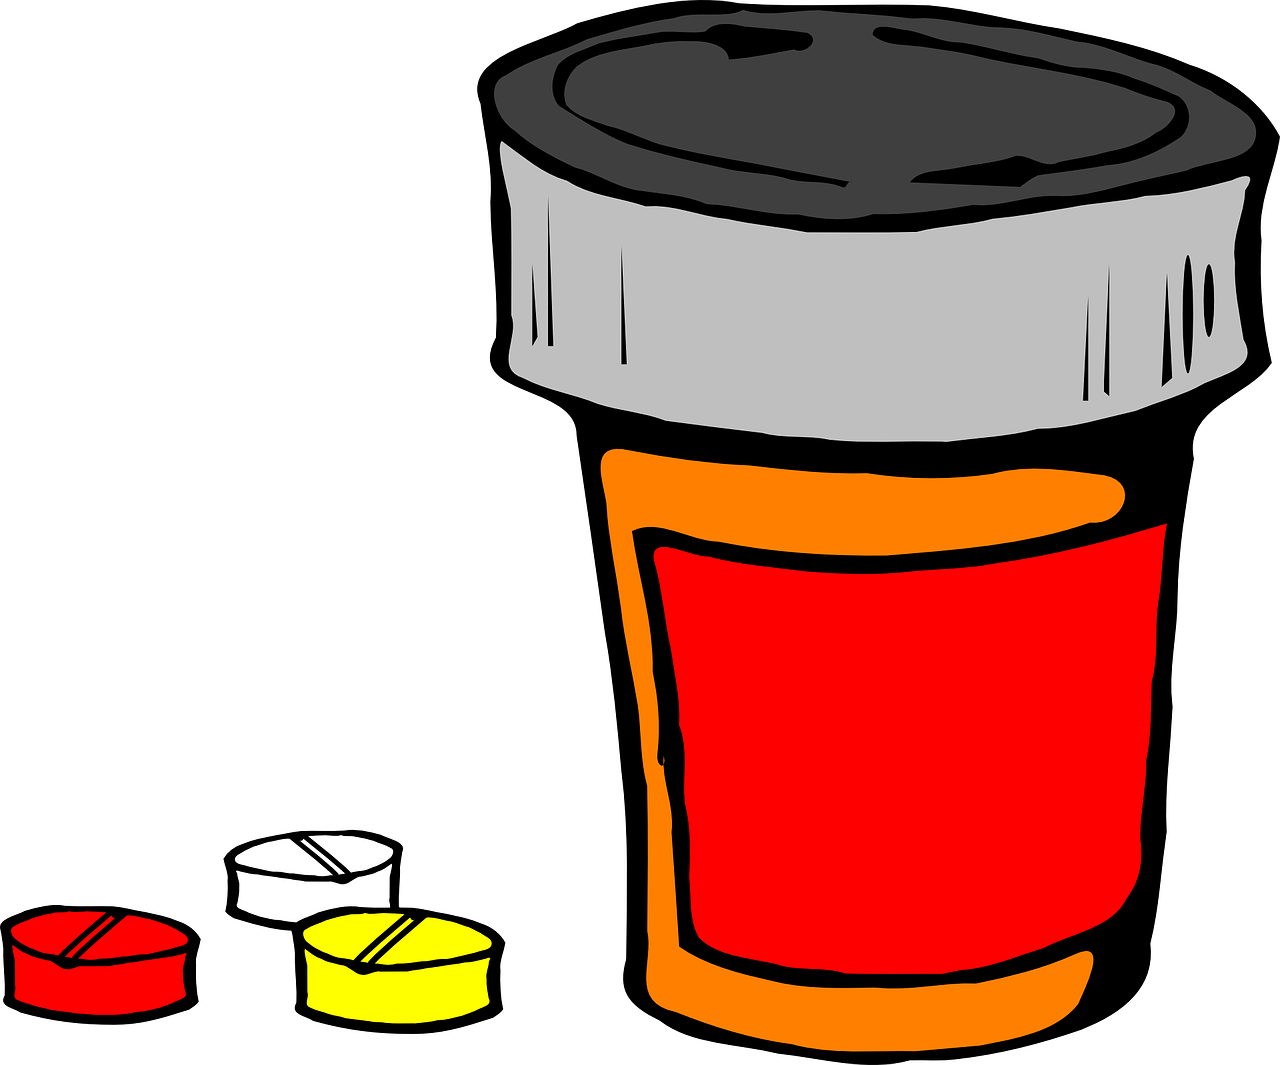 Tabletes, Medicina, Sveikata, Vaistas, Vaistinė, Mokslas, Gydymas, Priklausomybe, Receptas, Gydymas